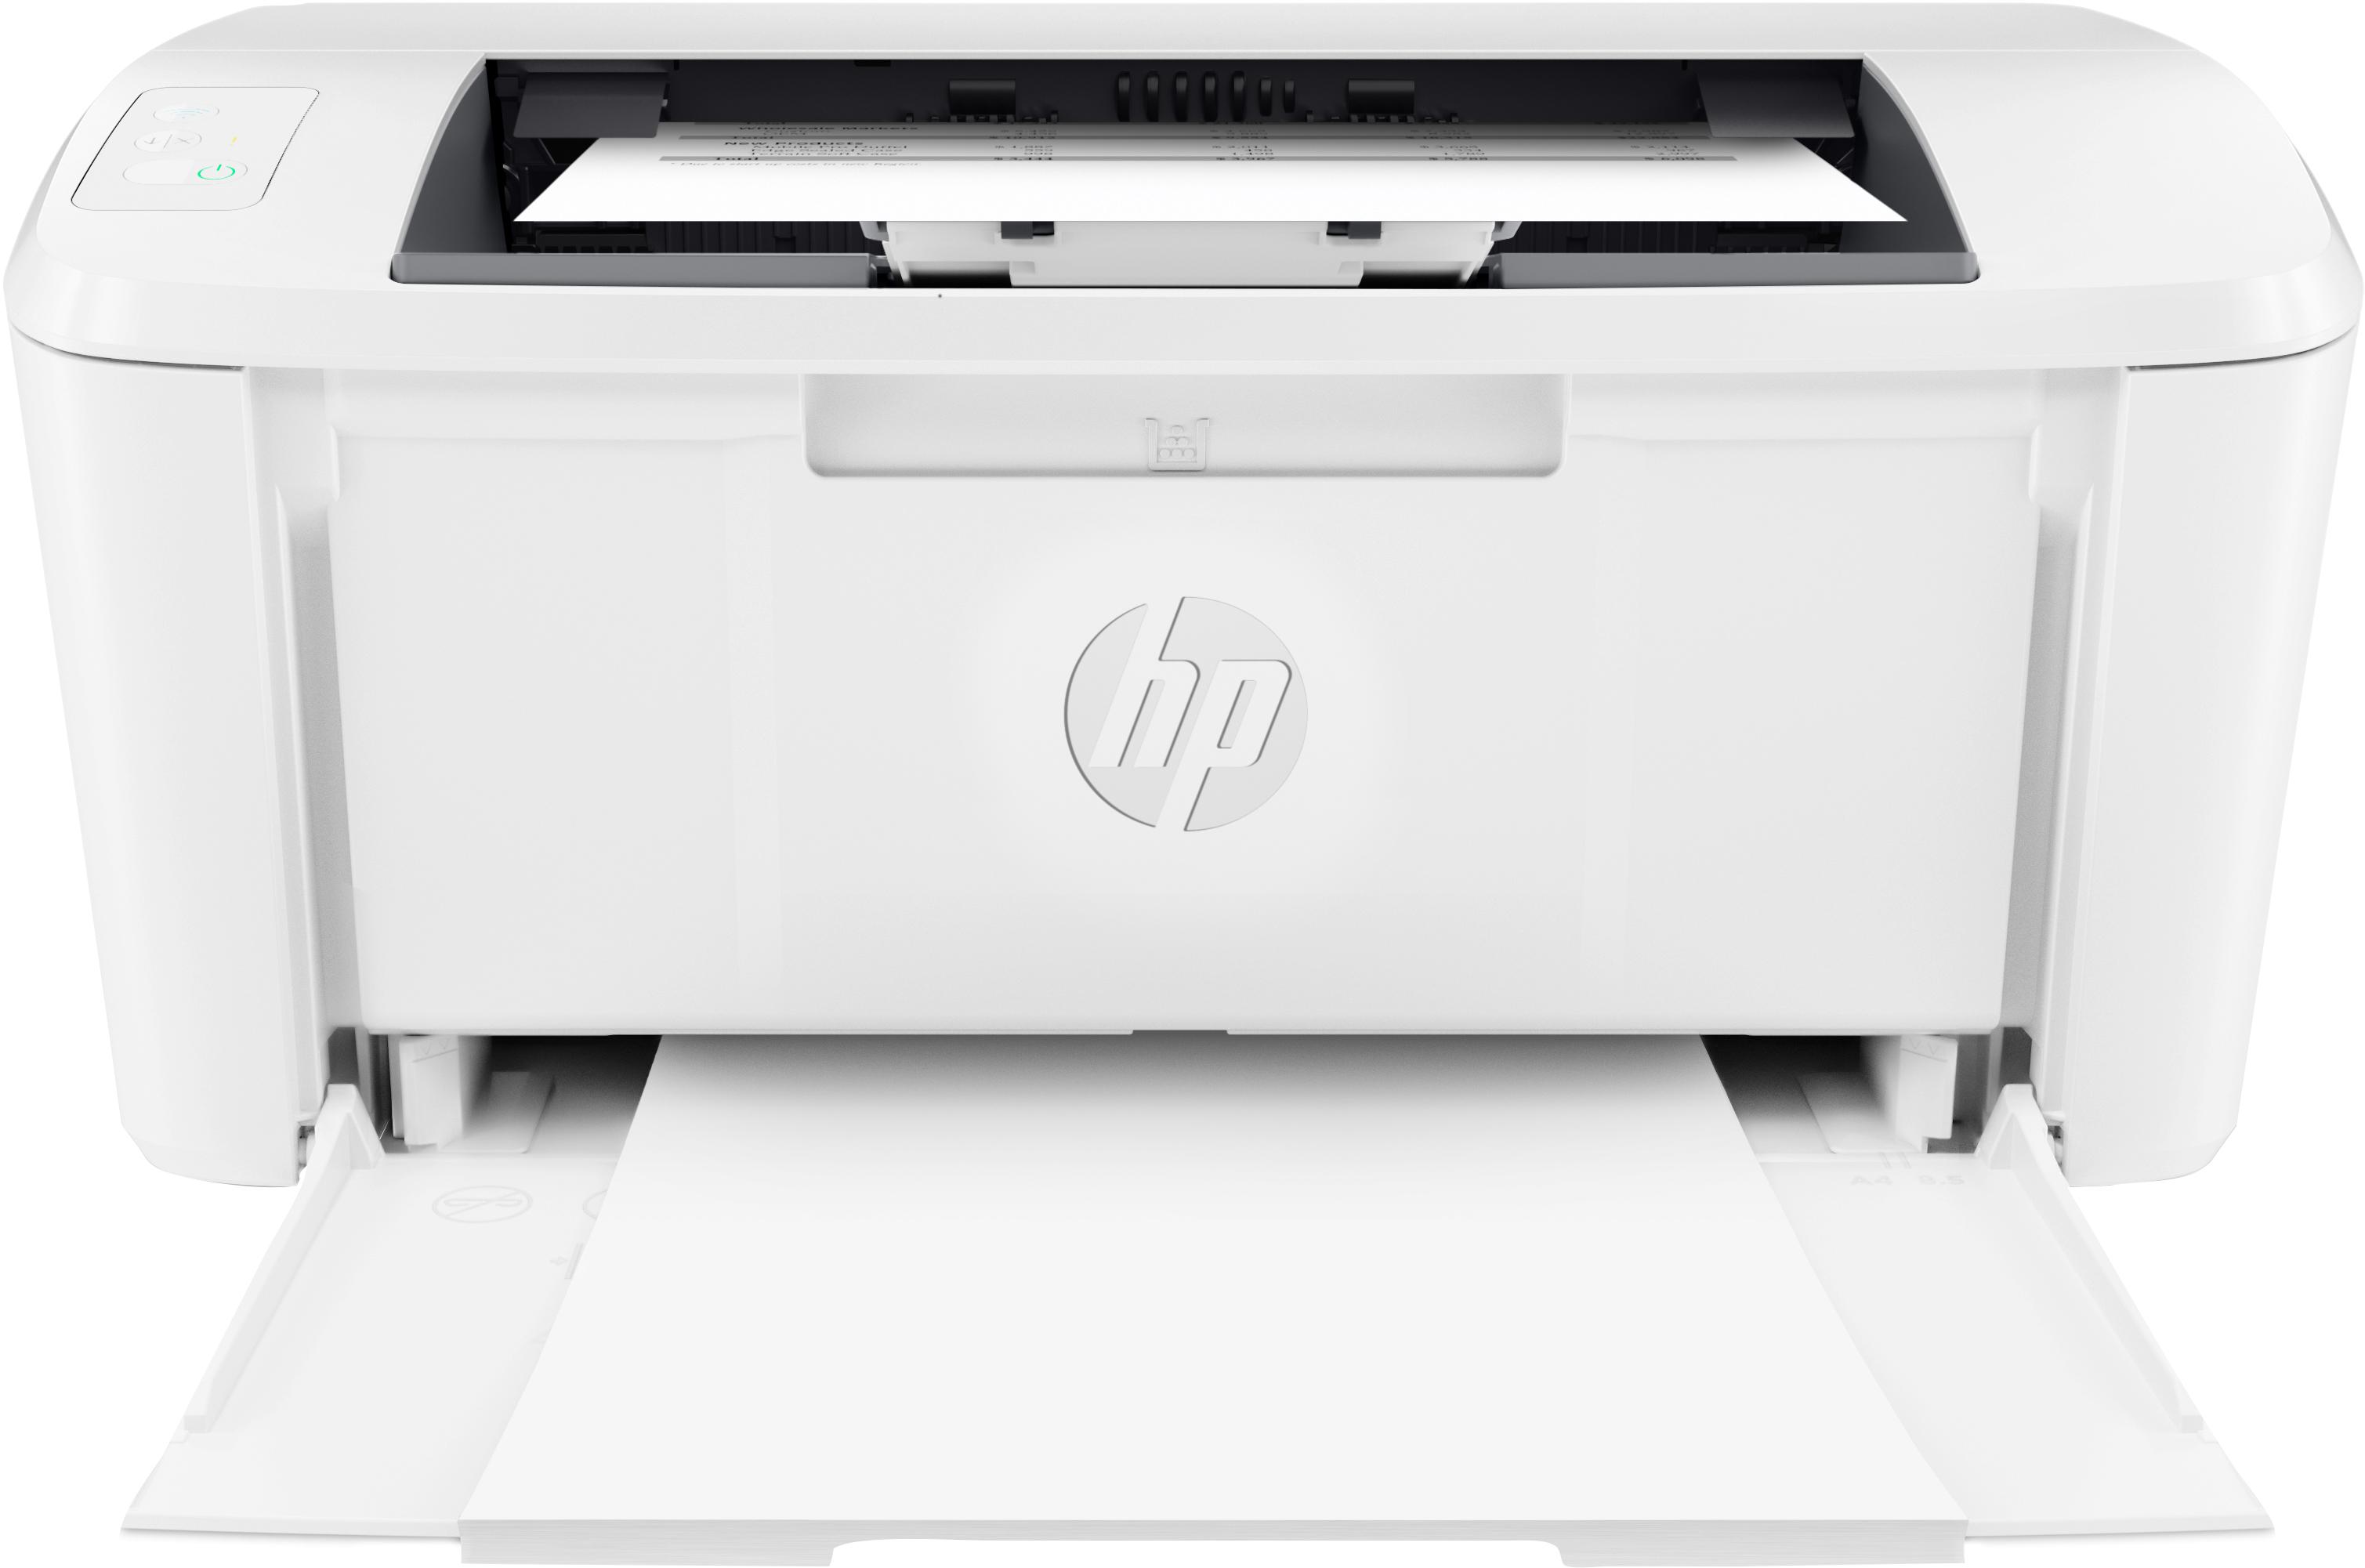 HP - Impresora Monocromática Laser HP LaserJet M110w (Impressão), Duplex Manual, Wireless